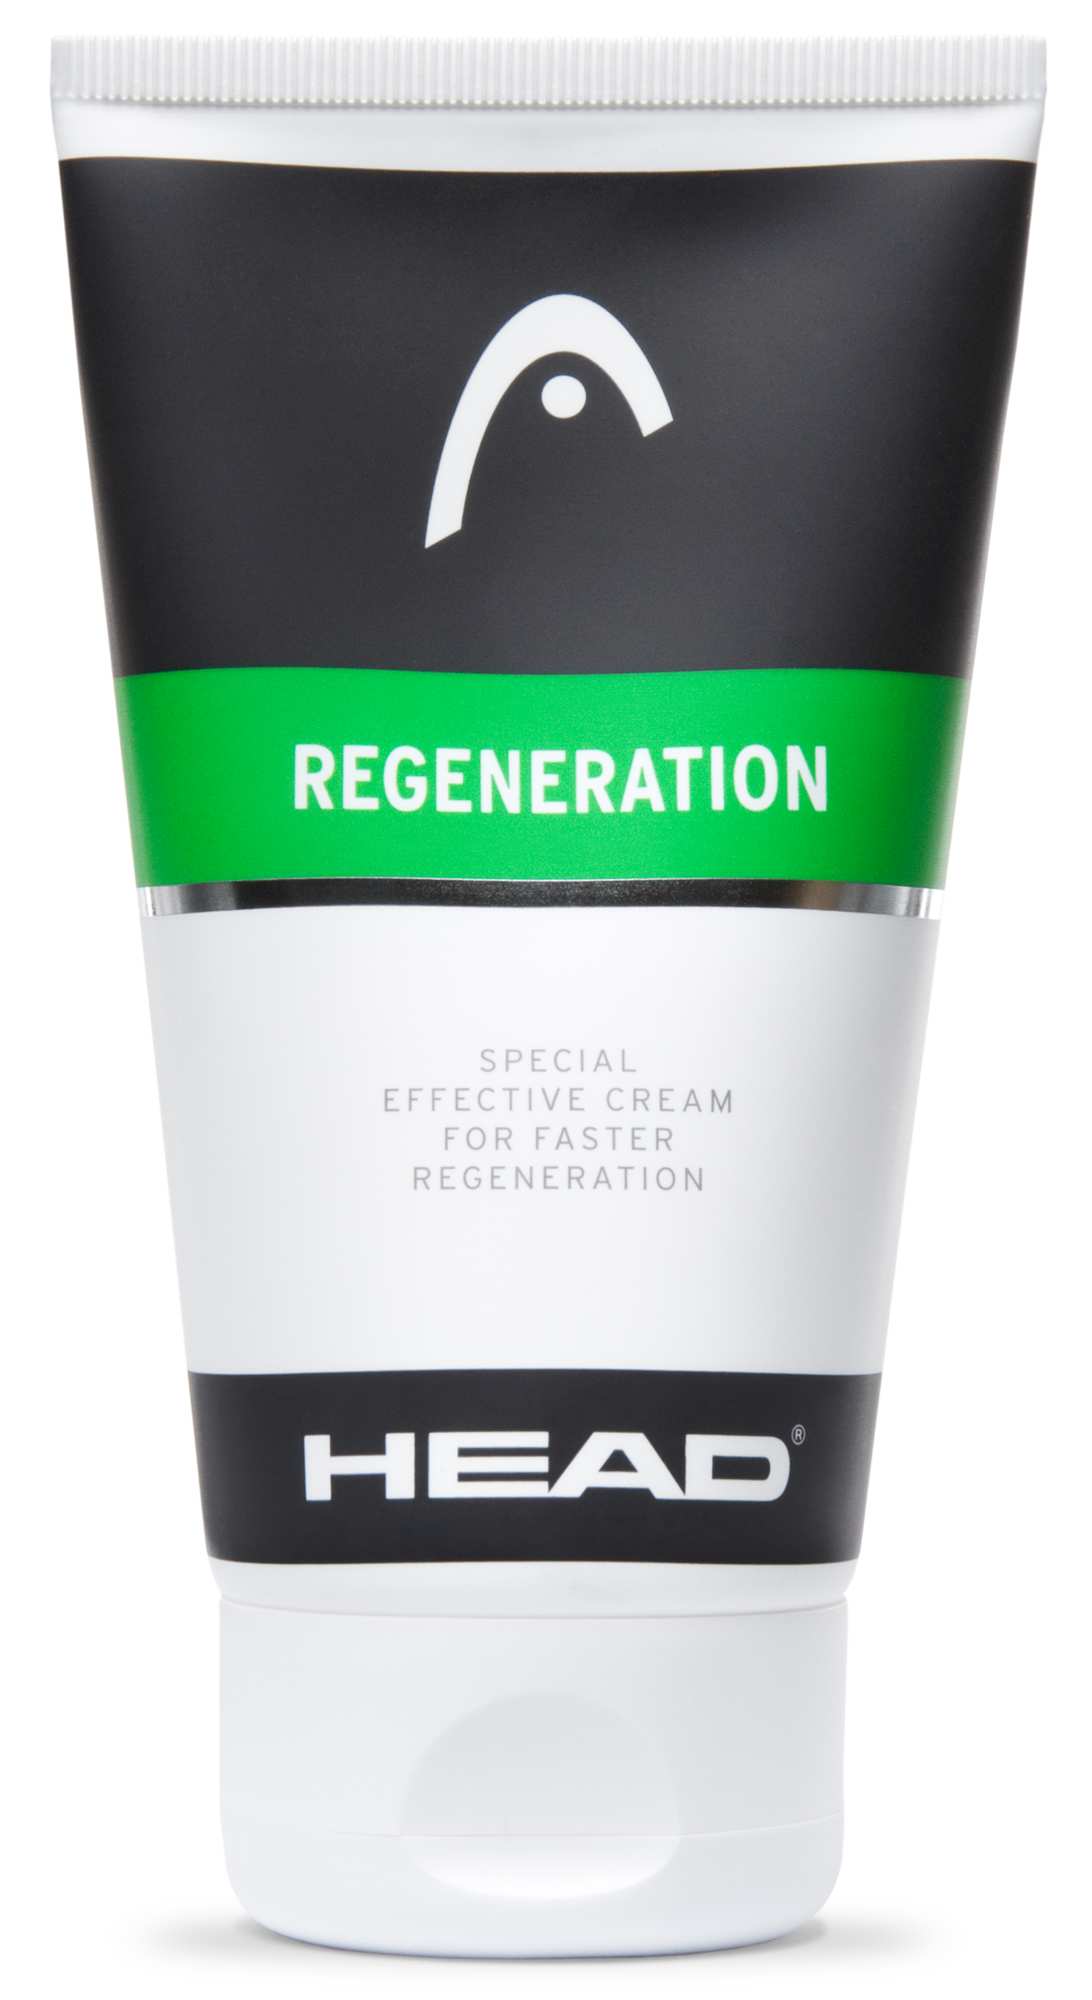 Regeneration cream